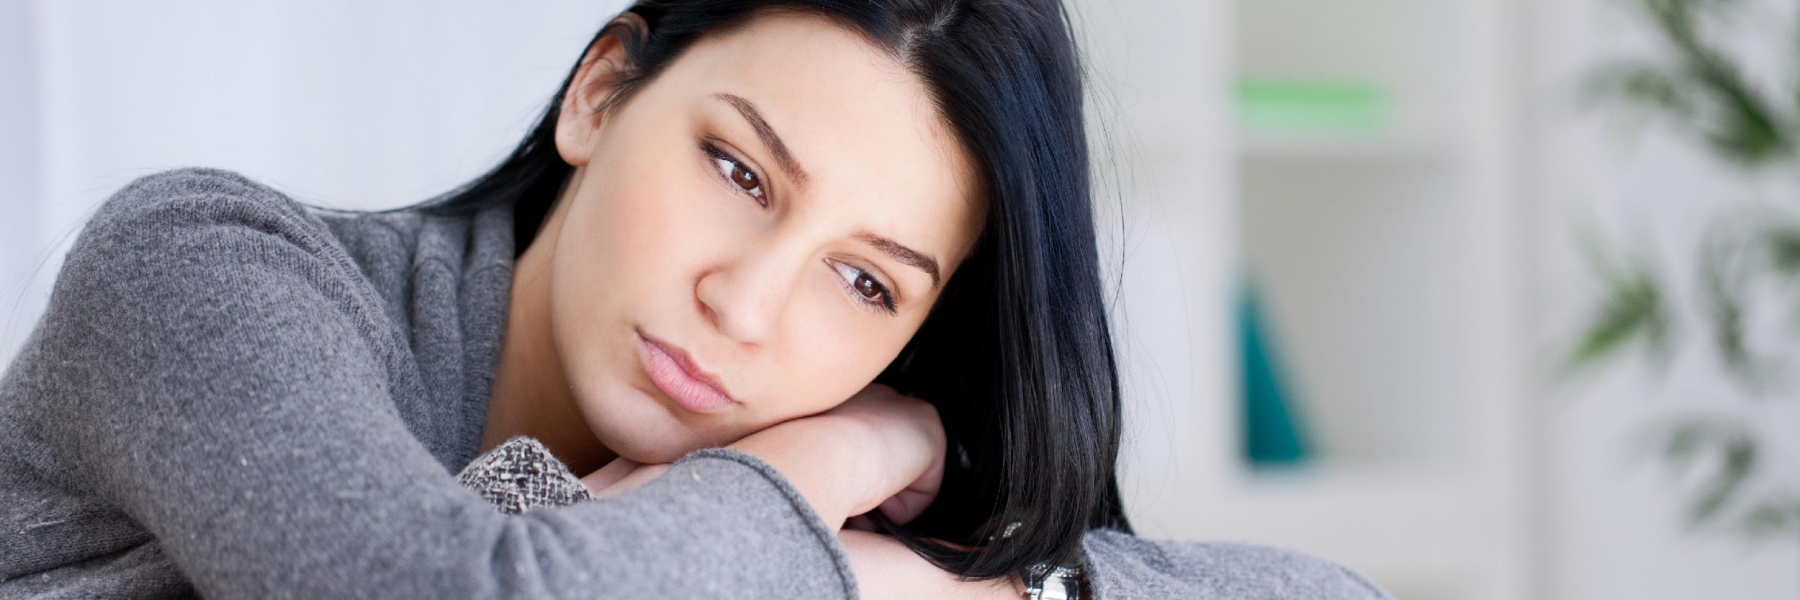 5 أعراض جسدية للاكتئاب لا يتم الالتفات إليها